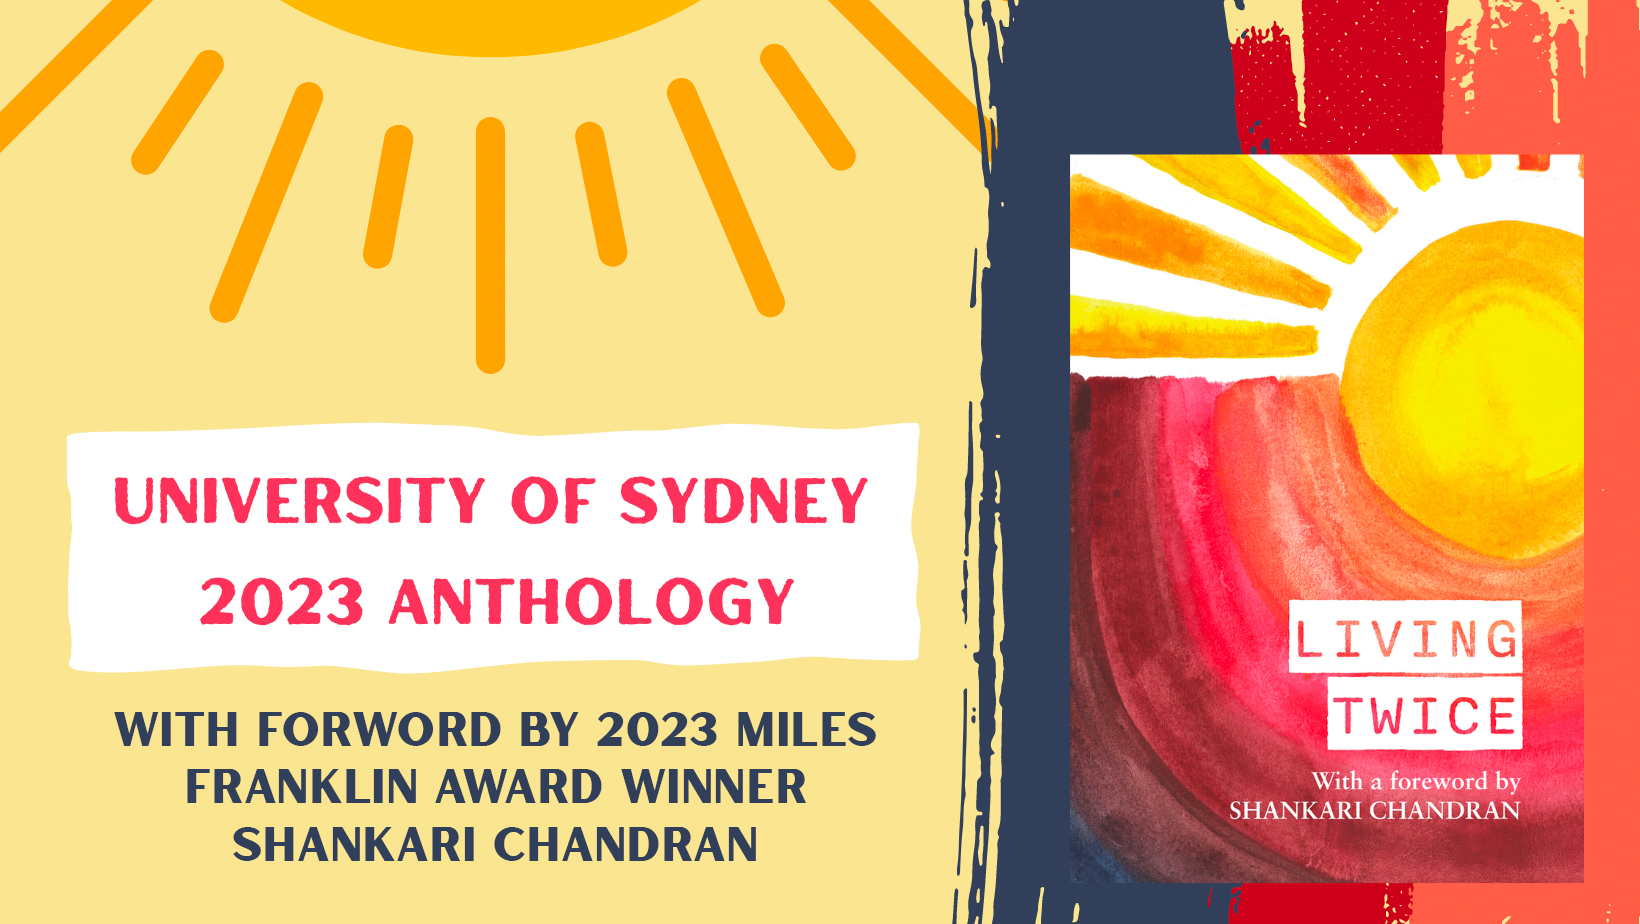 Sydney University Anthology